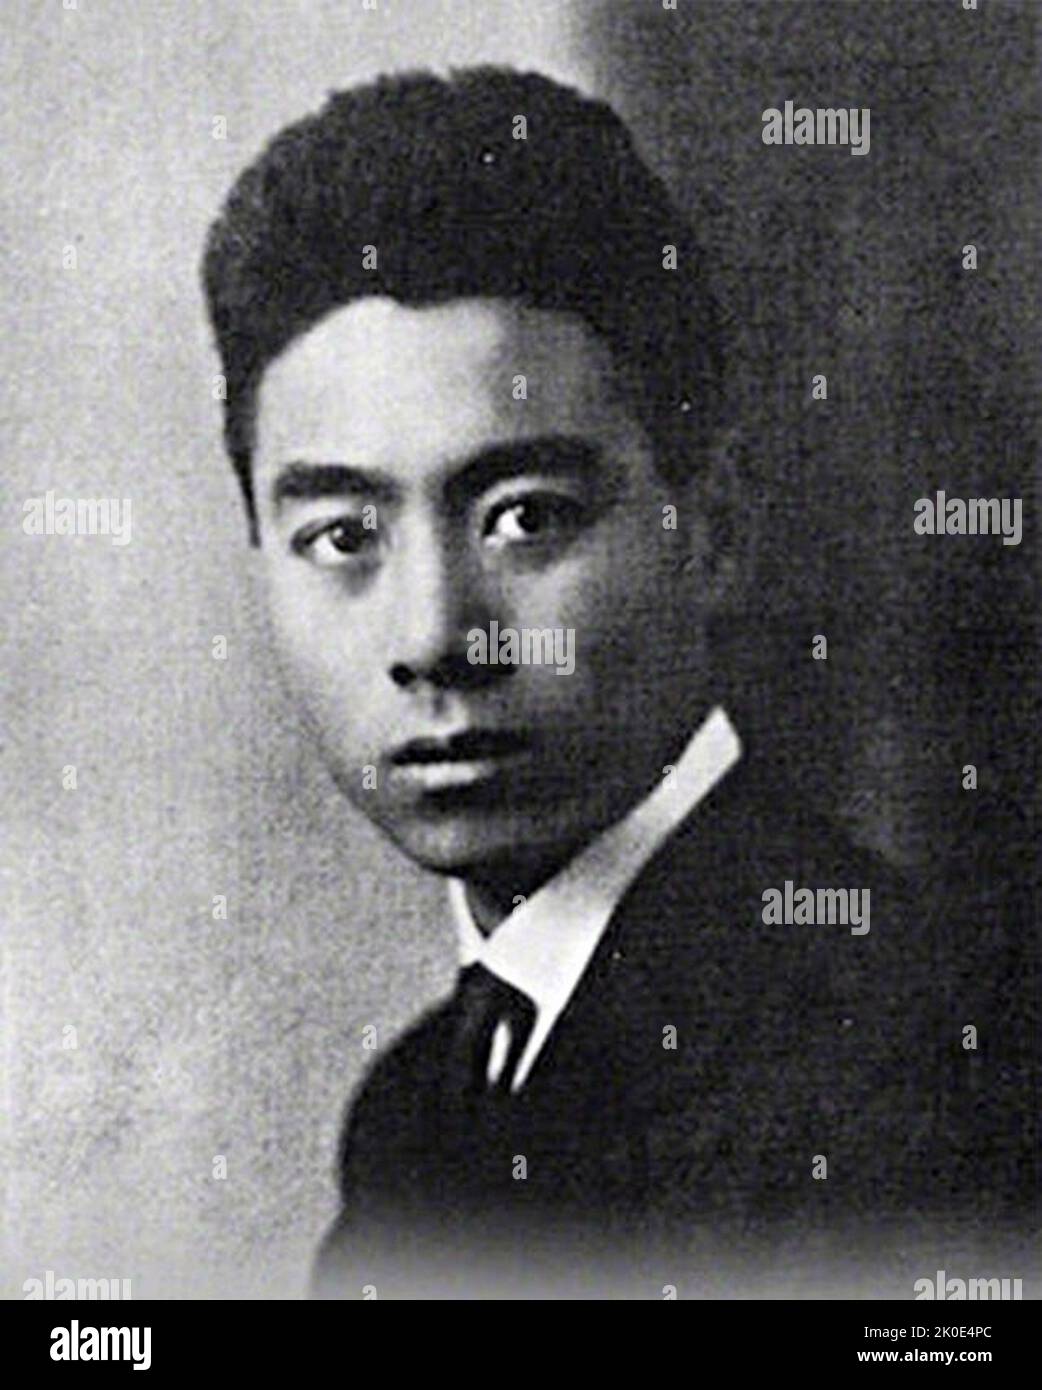 Un portrait du jeune Zhou Enlai (1898 - 1976), premier Premier ministre de la République populaire de Chine. D'octobre 1949 jusqu'à sa mort en janvier 1976, Zhou était le chef du gouvernement de la Chine. Zhou a servi sous la présidence de Mao Tsé-toung et a aidé le Parti communiste à atteindre le pouvoir, en aidant plus tard à consolider son contrôle, à former sa politique étrangère et à développer l'économie chinoise. Banque D'Images